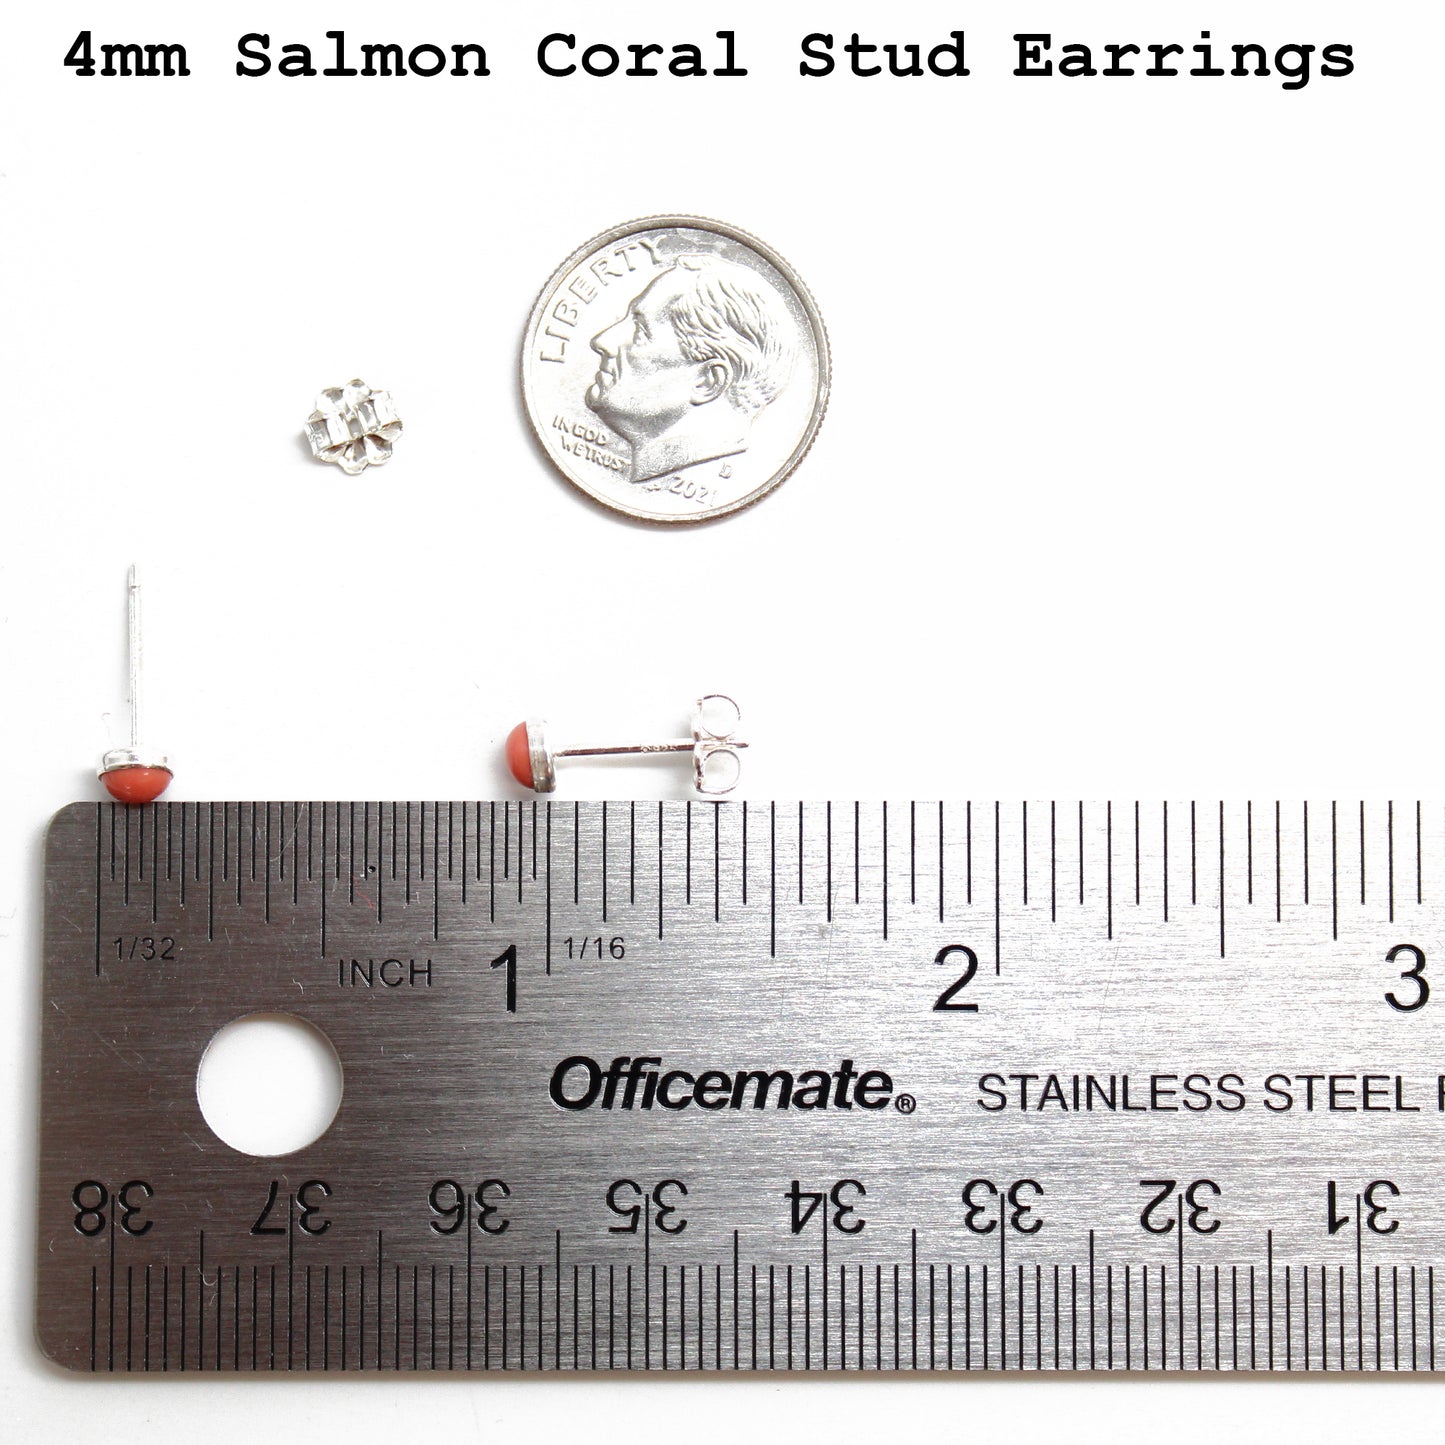 Salmon Coral Stud Earrings-4mm